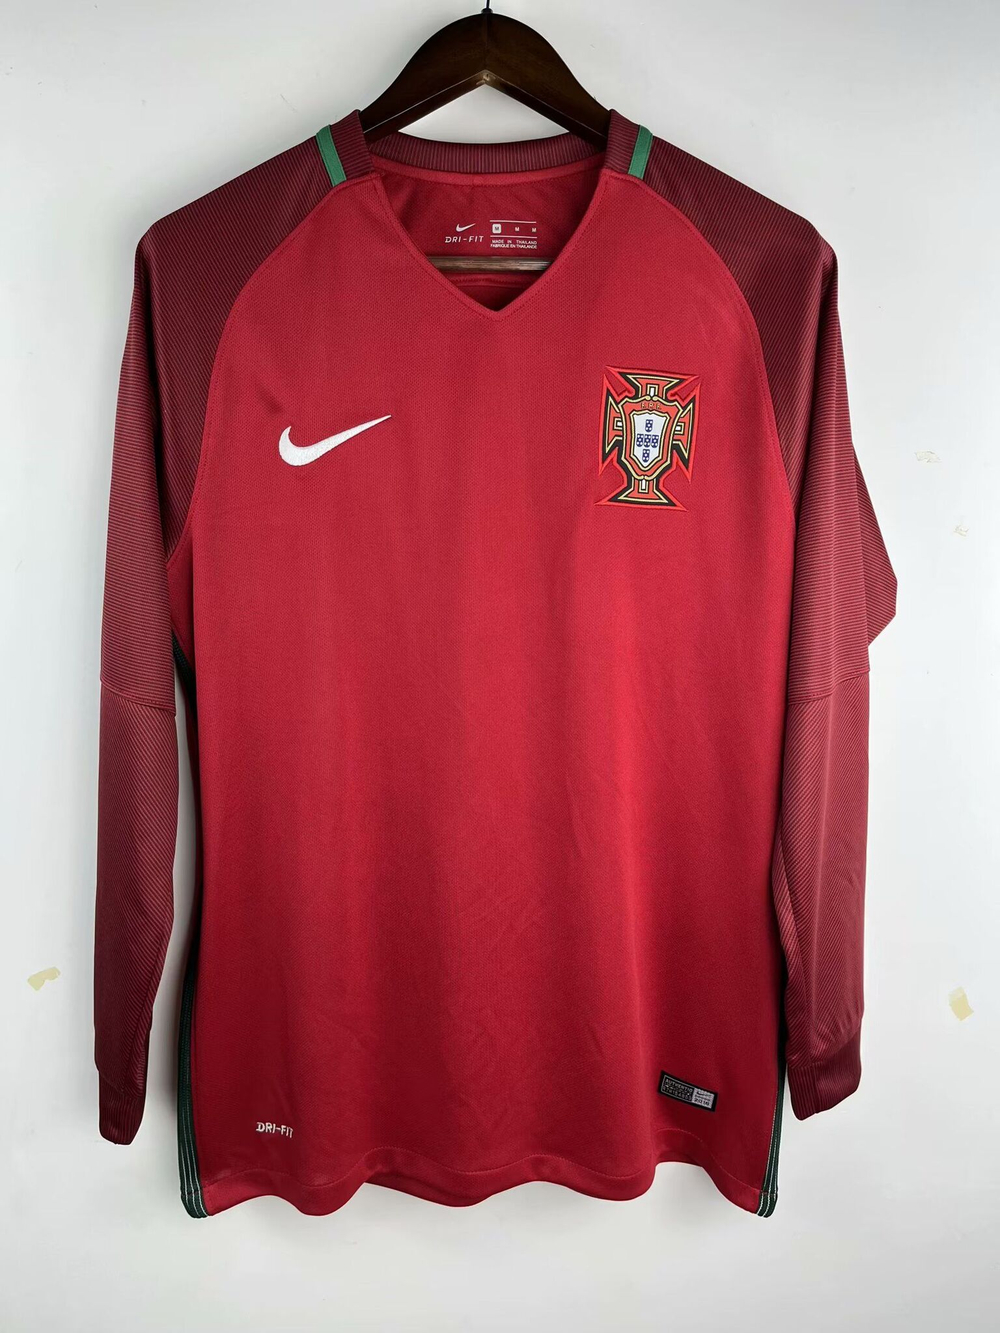 Купить ретро форму сборной Португалии 2016